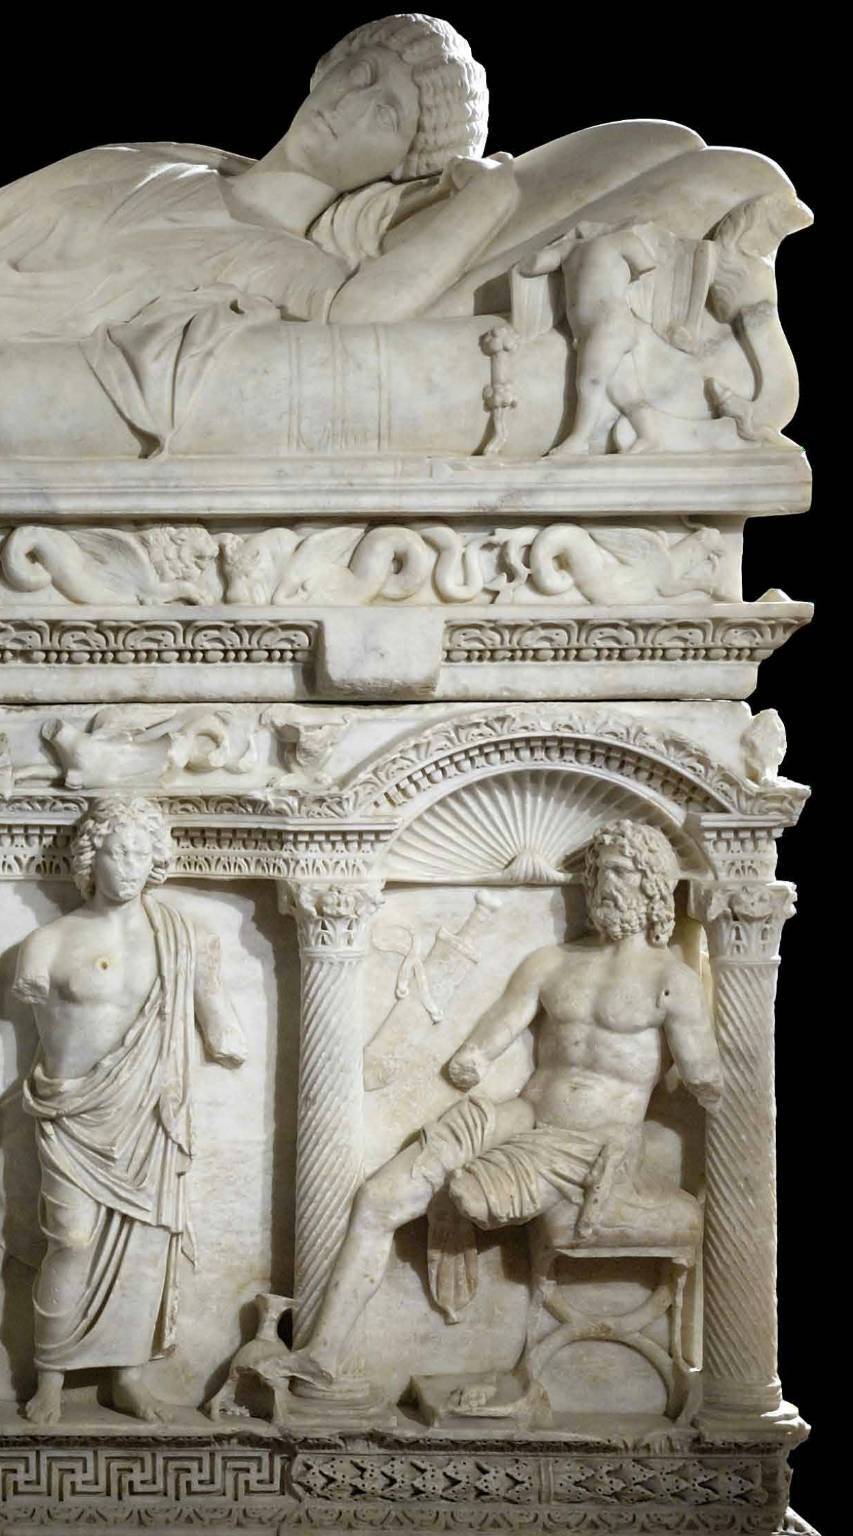 Melfi, i sarcofagi di Atella e Rapolla in mostra al Museo archeologico